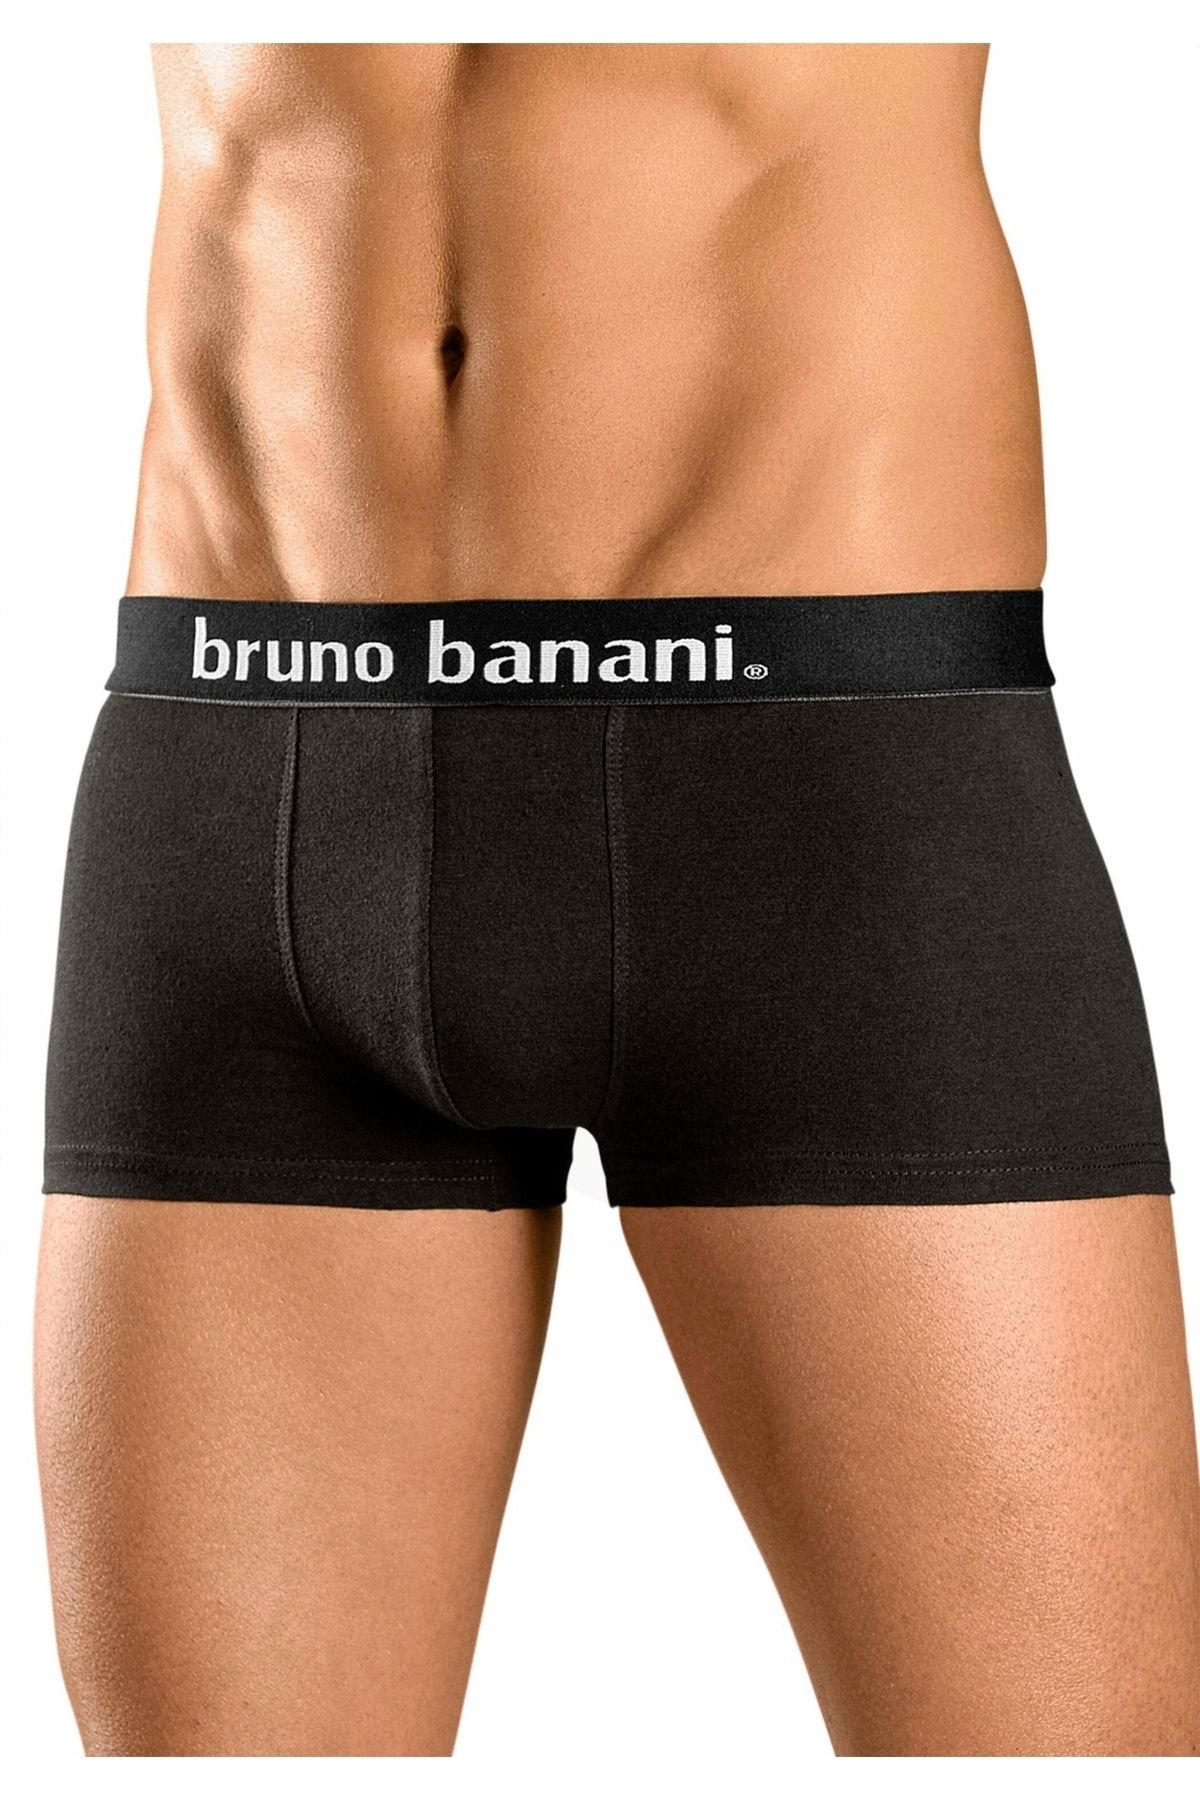 Trendyol Boxershorts - Banani - - Unifarben Schwarz Bruno